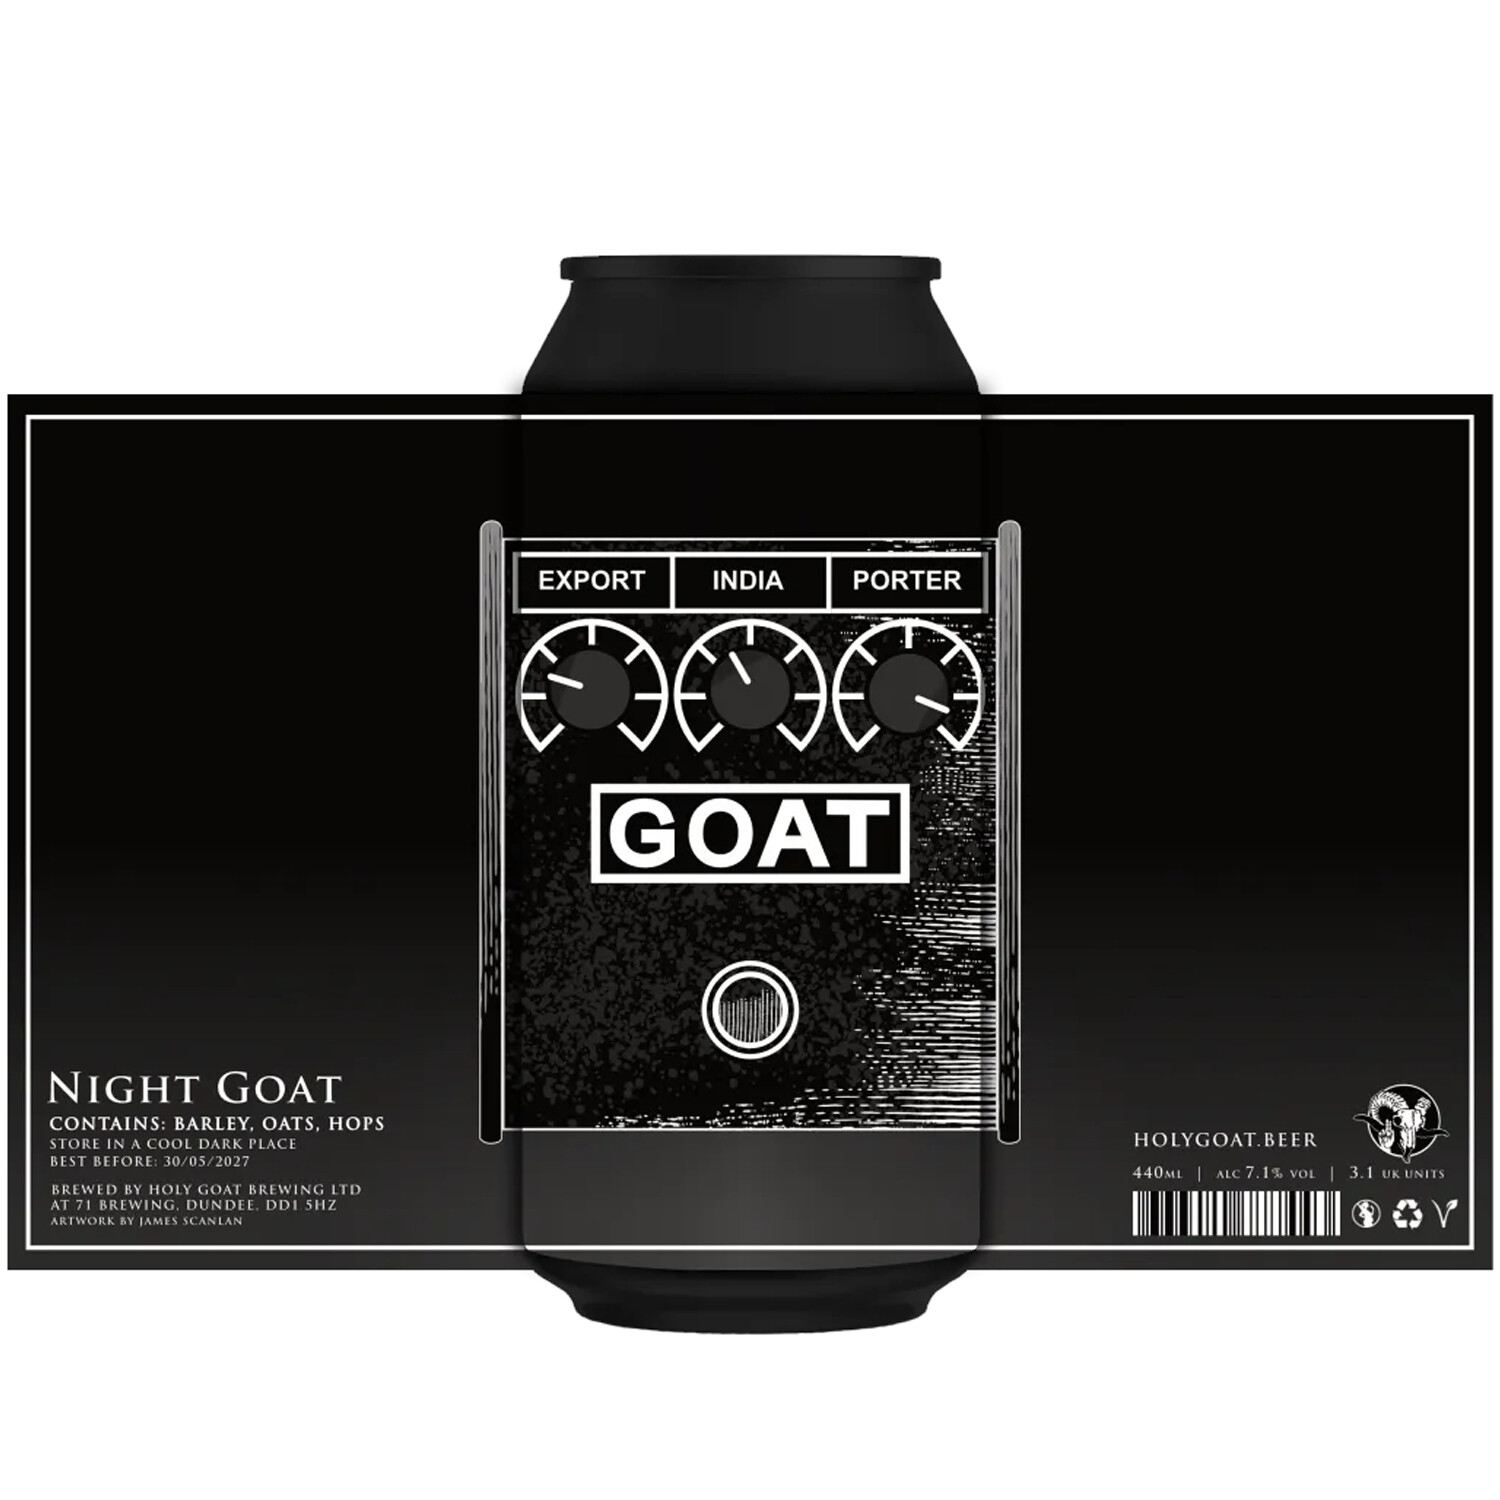 Holy Goat Night Goat Export India Porte​r